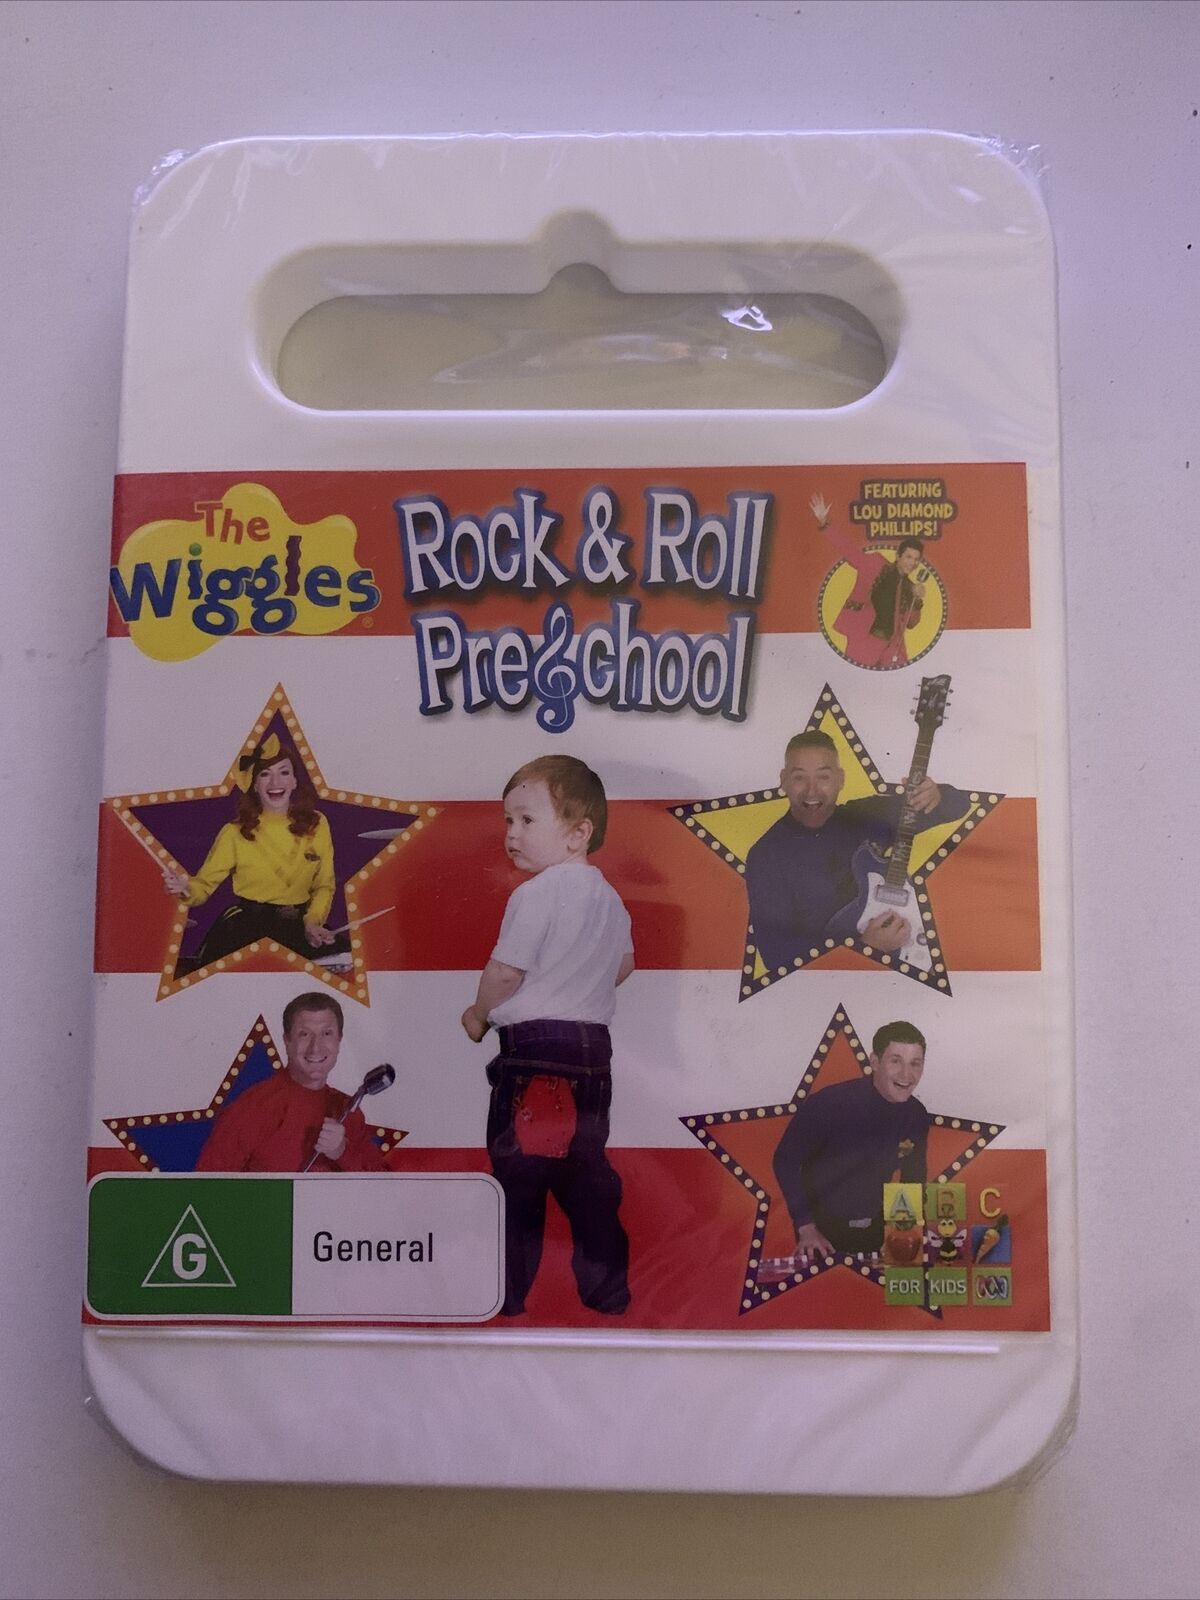 *New Sealed* The Wiggles - Rock & Roll Preschool (DVD) Region 4